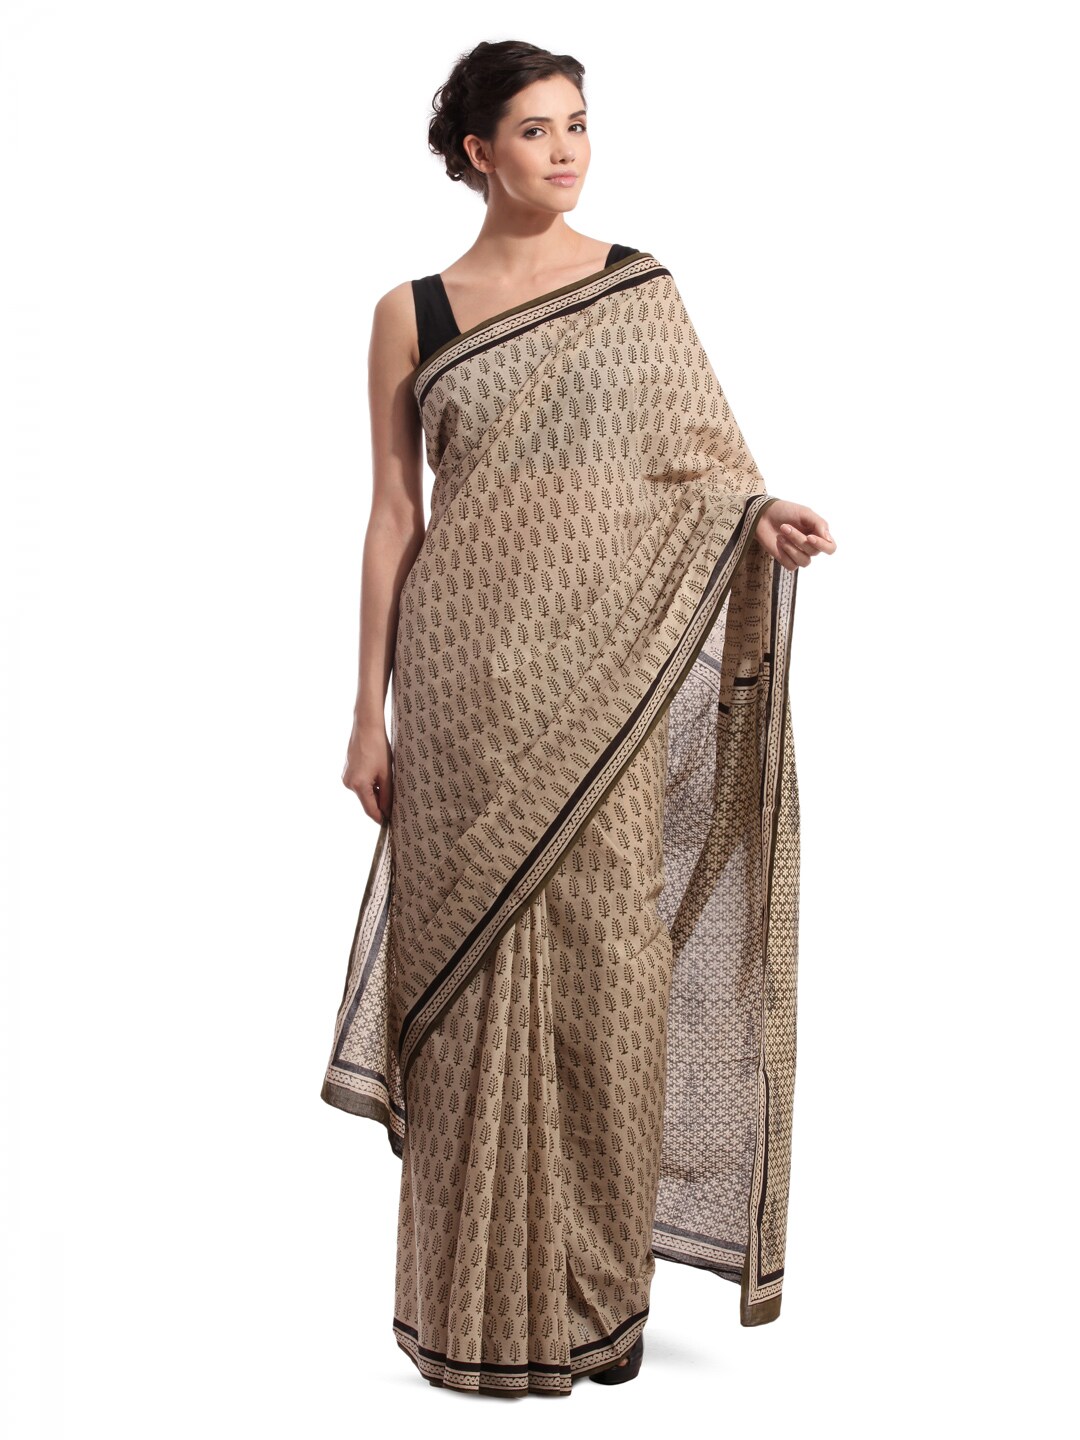 Fabindia Beige Jaipur Print Cotton Sari